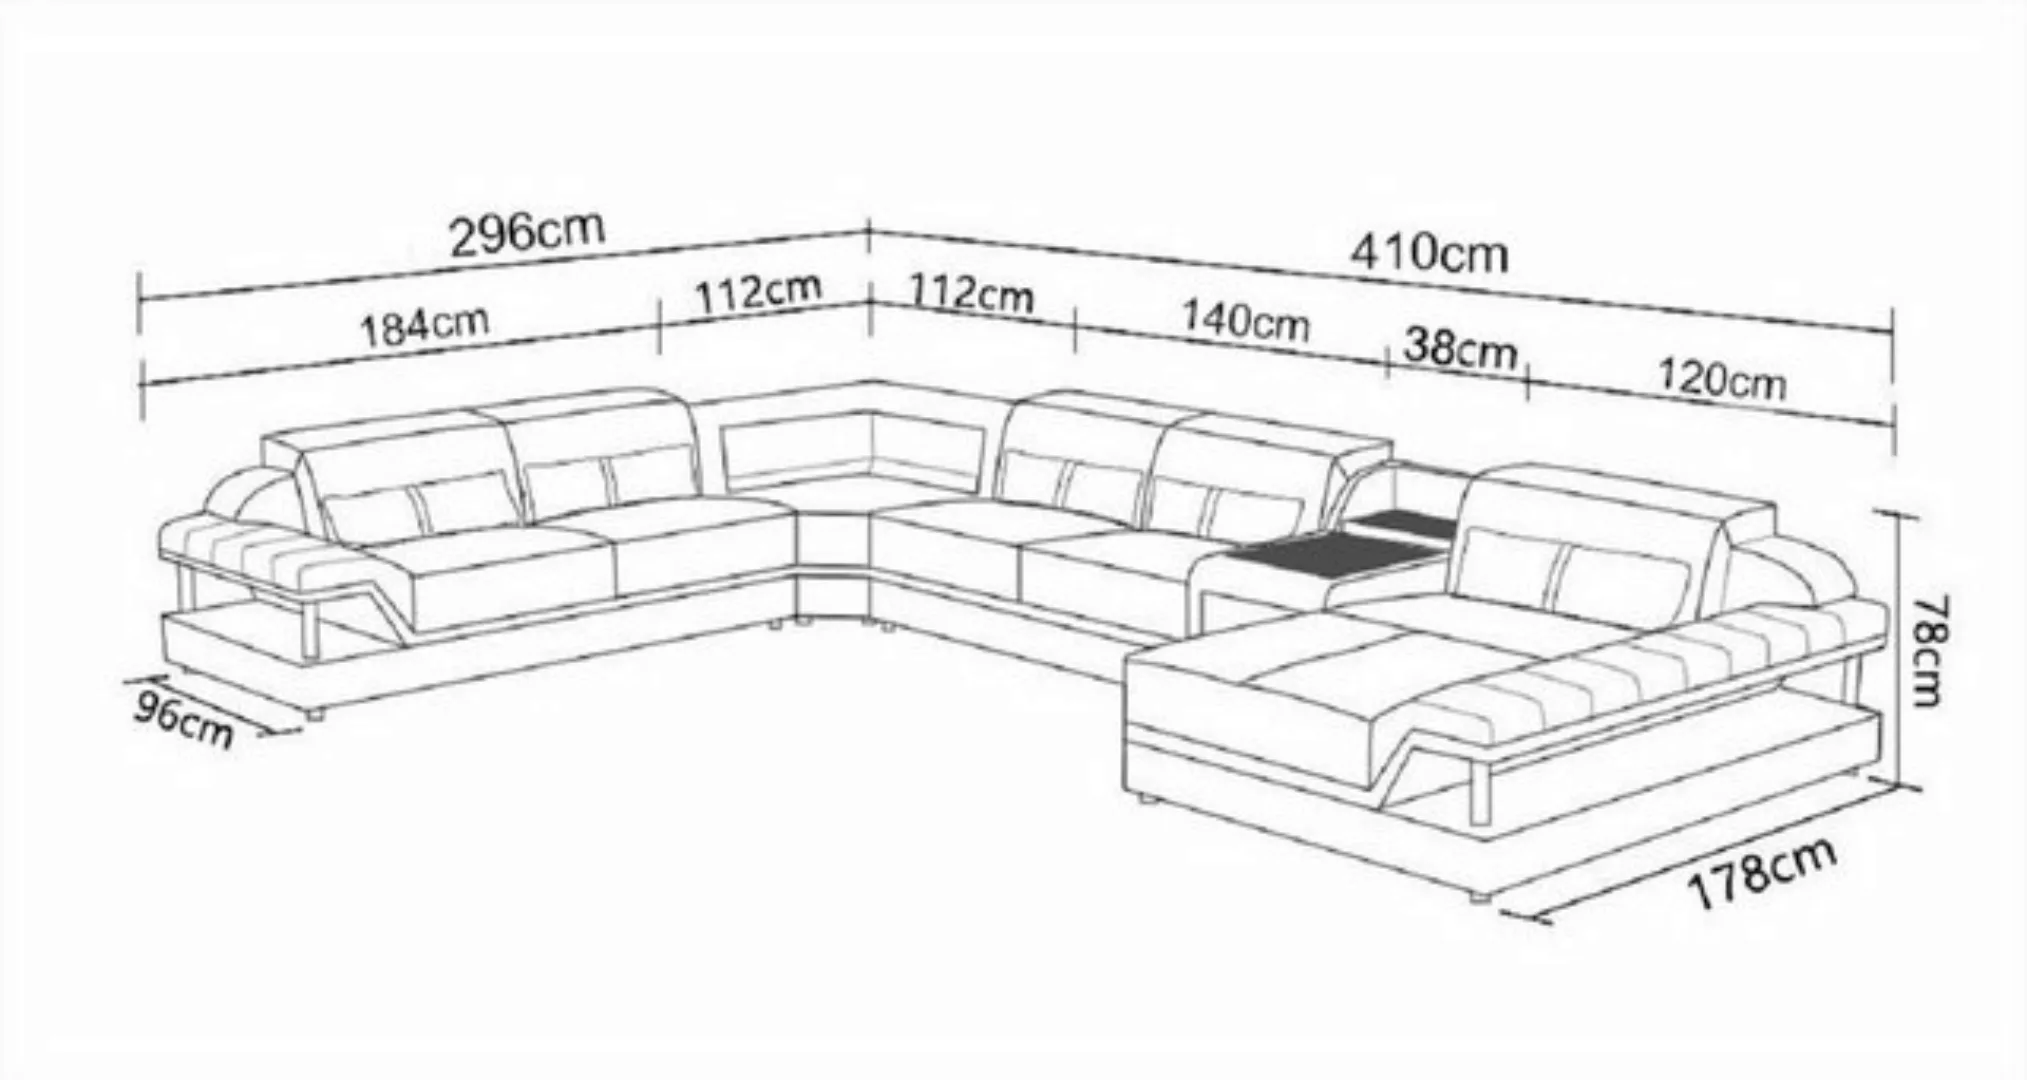 JVmoebel Ecksofa Designer Wohnlandschaft U-Form Couch Ecksofa Polster, Made günstig online kaufen